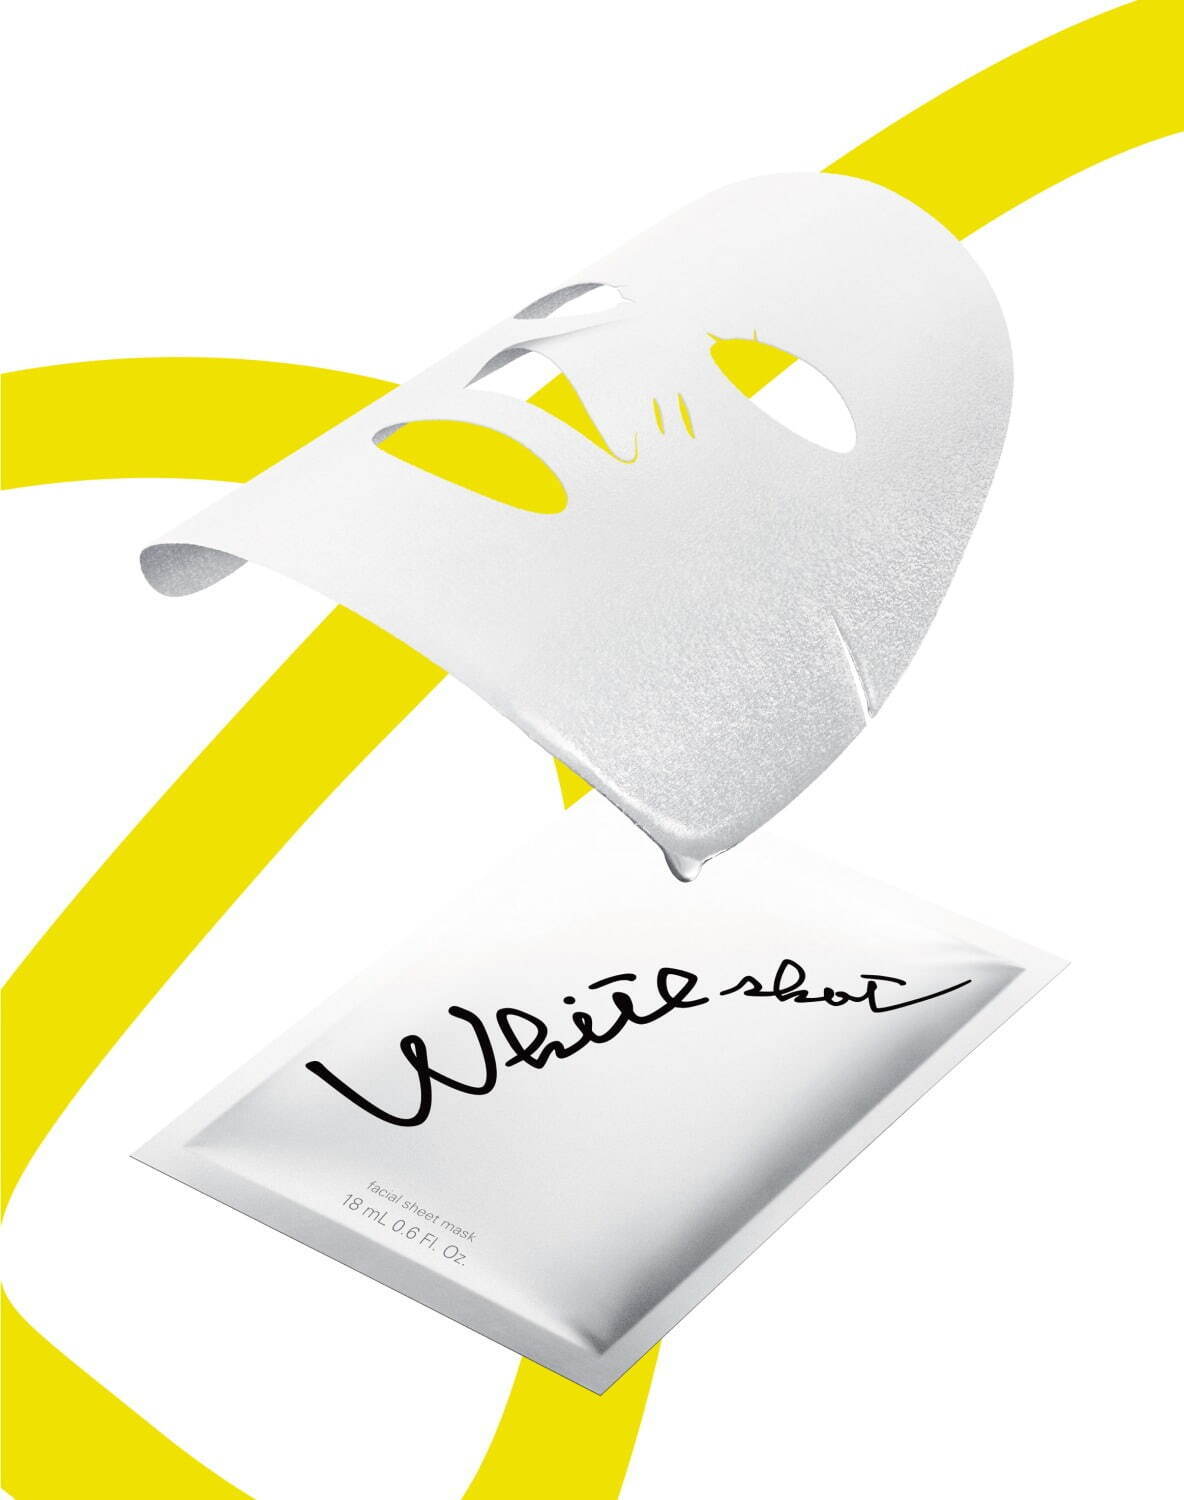 「ホワイトショット マスク QXS」 18mL(1枚)×7包 7,480円